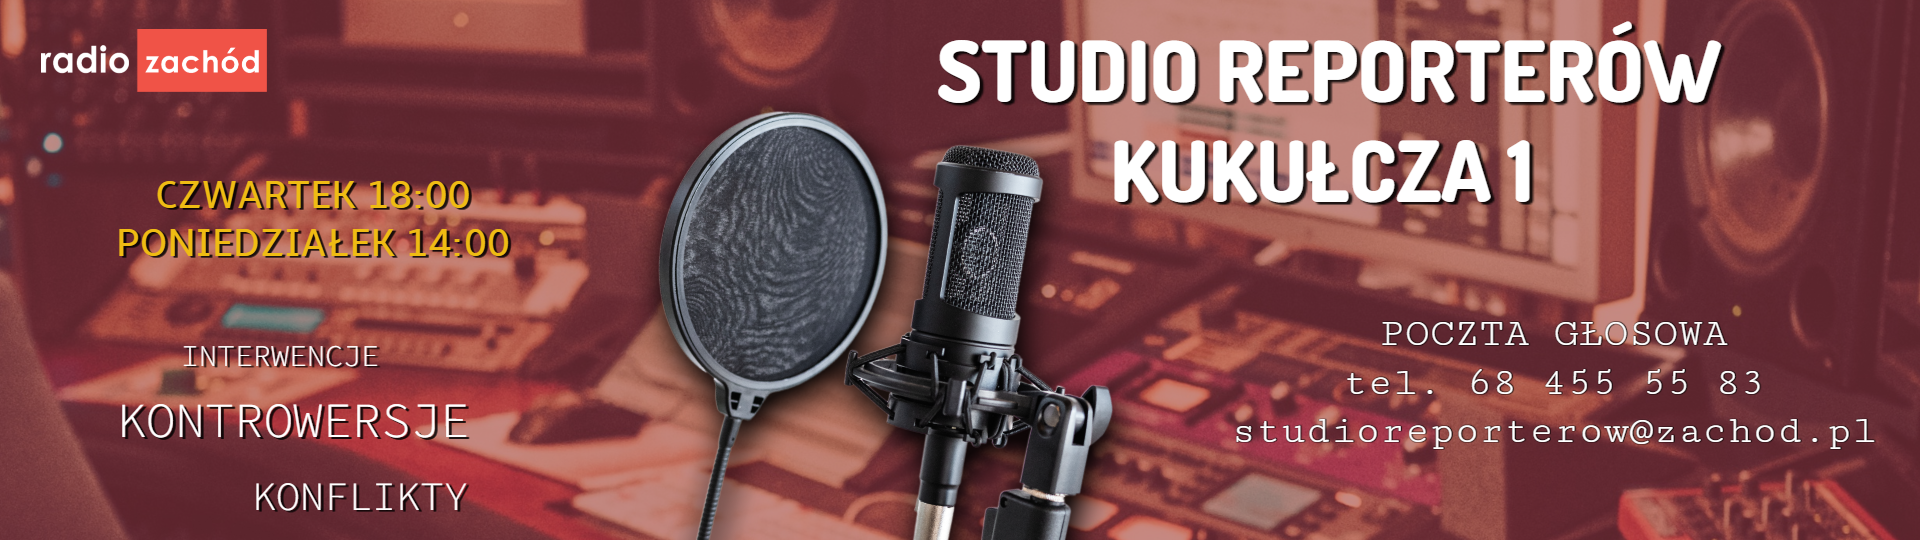 Studio reporterów Kukułcza 1 Radio Zachód - Lubuskie